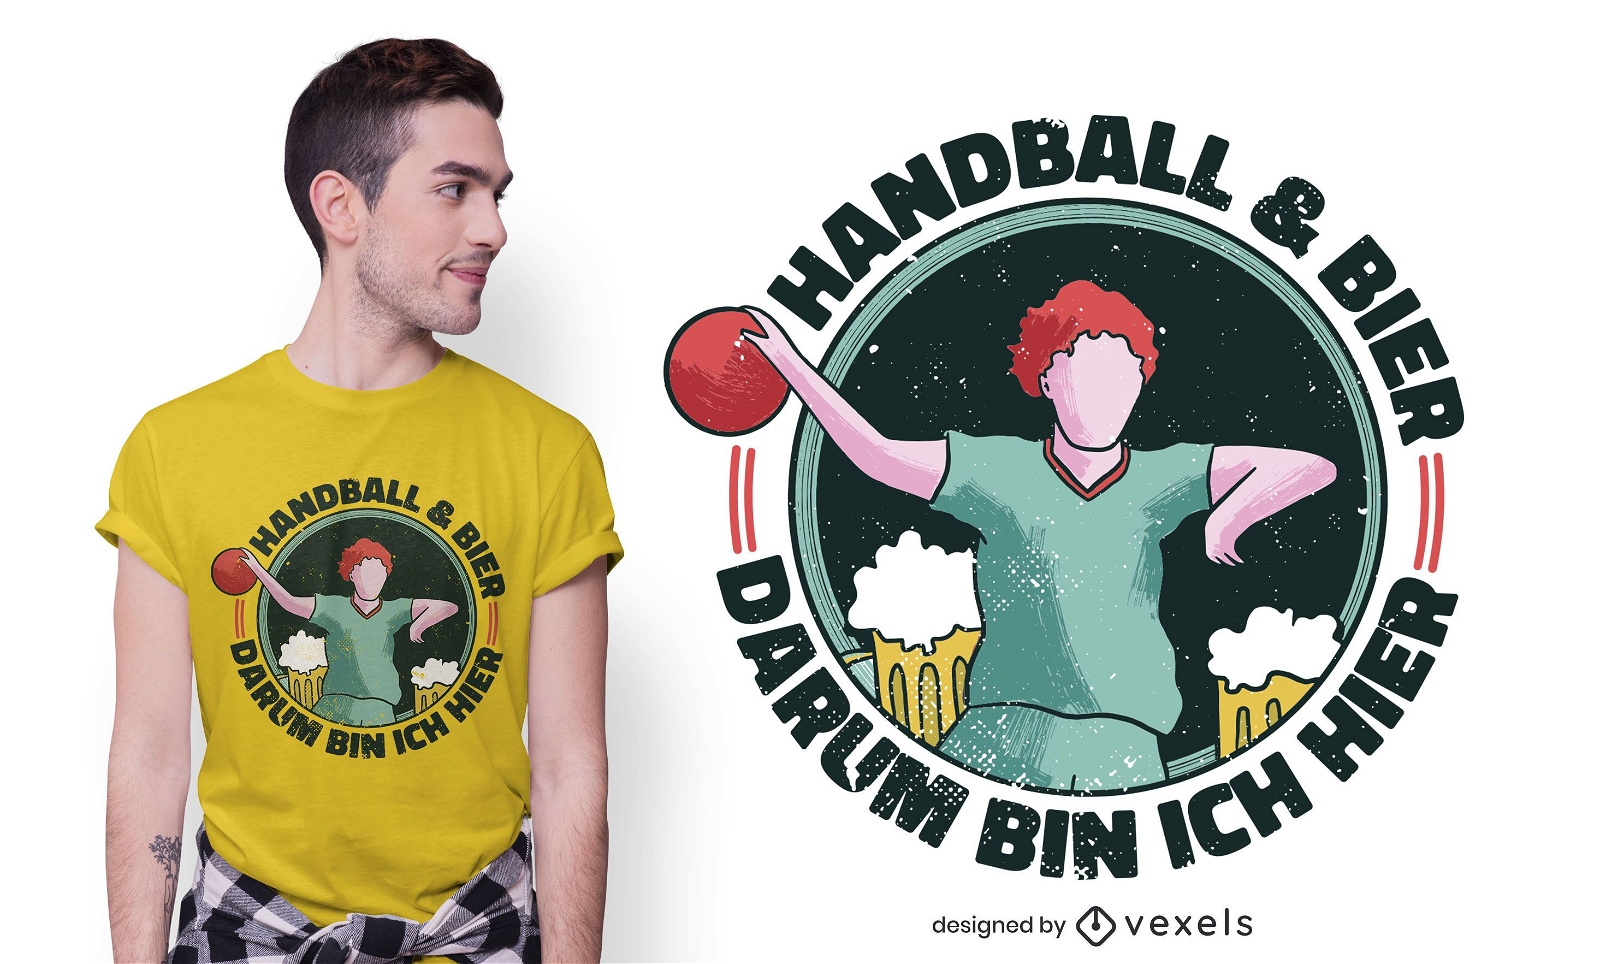 Handball Bier T-Shirt Design